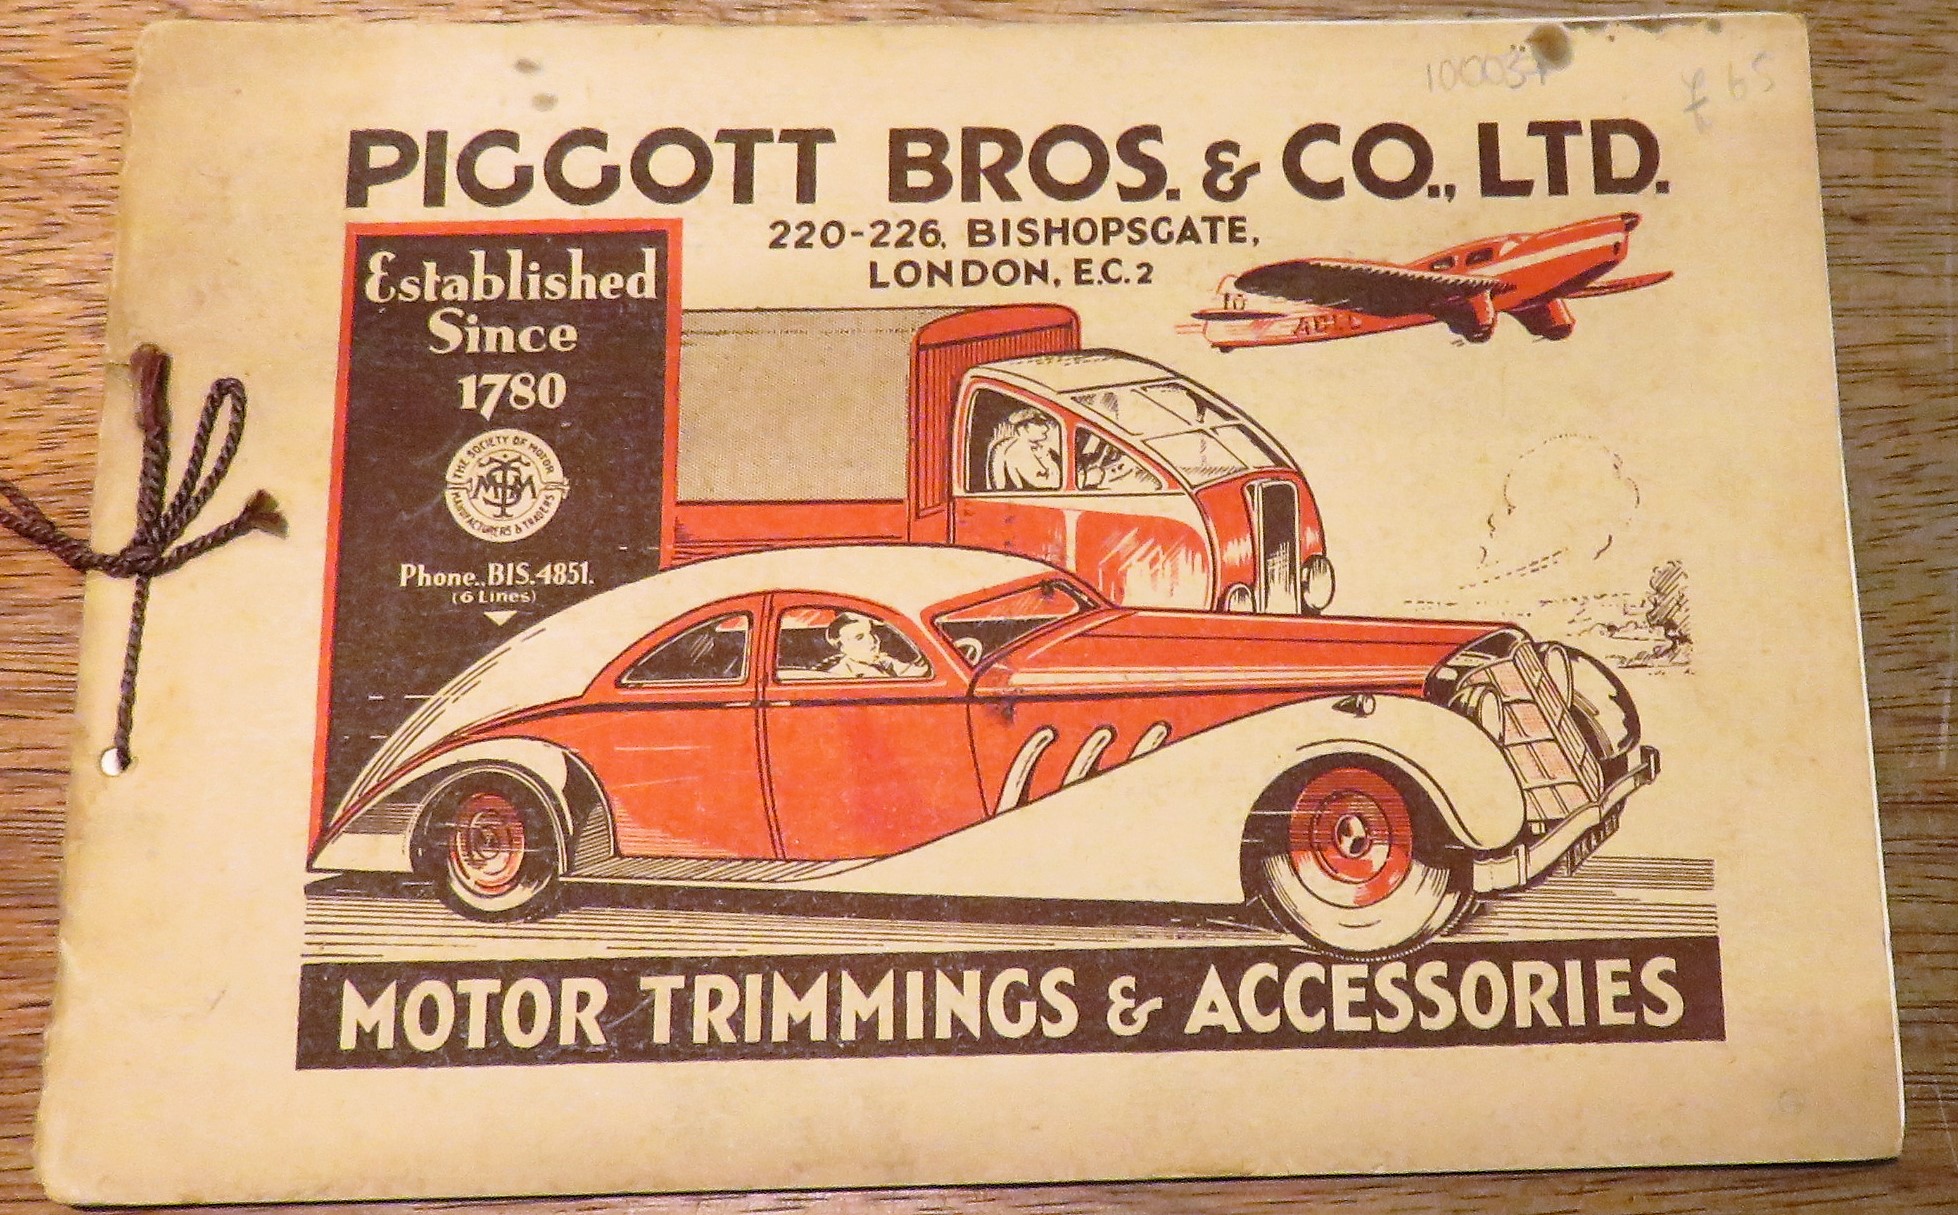 Piggott Bros. & Co., Ltd. Motor Trimmings & Accessories